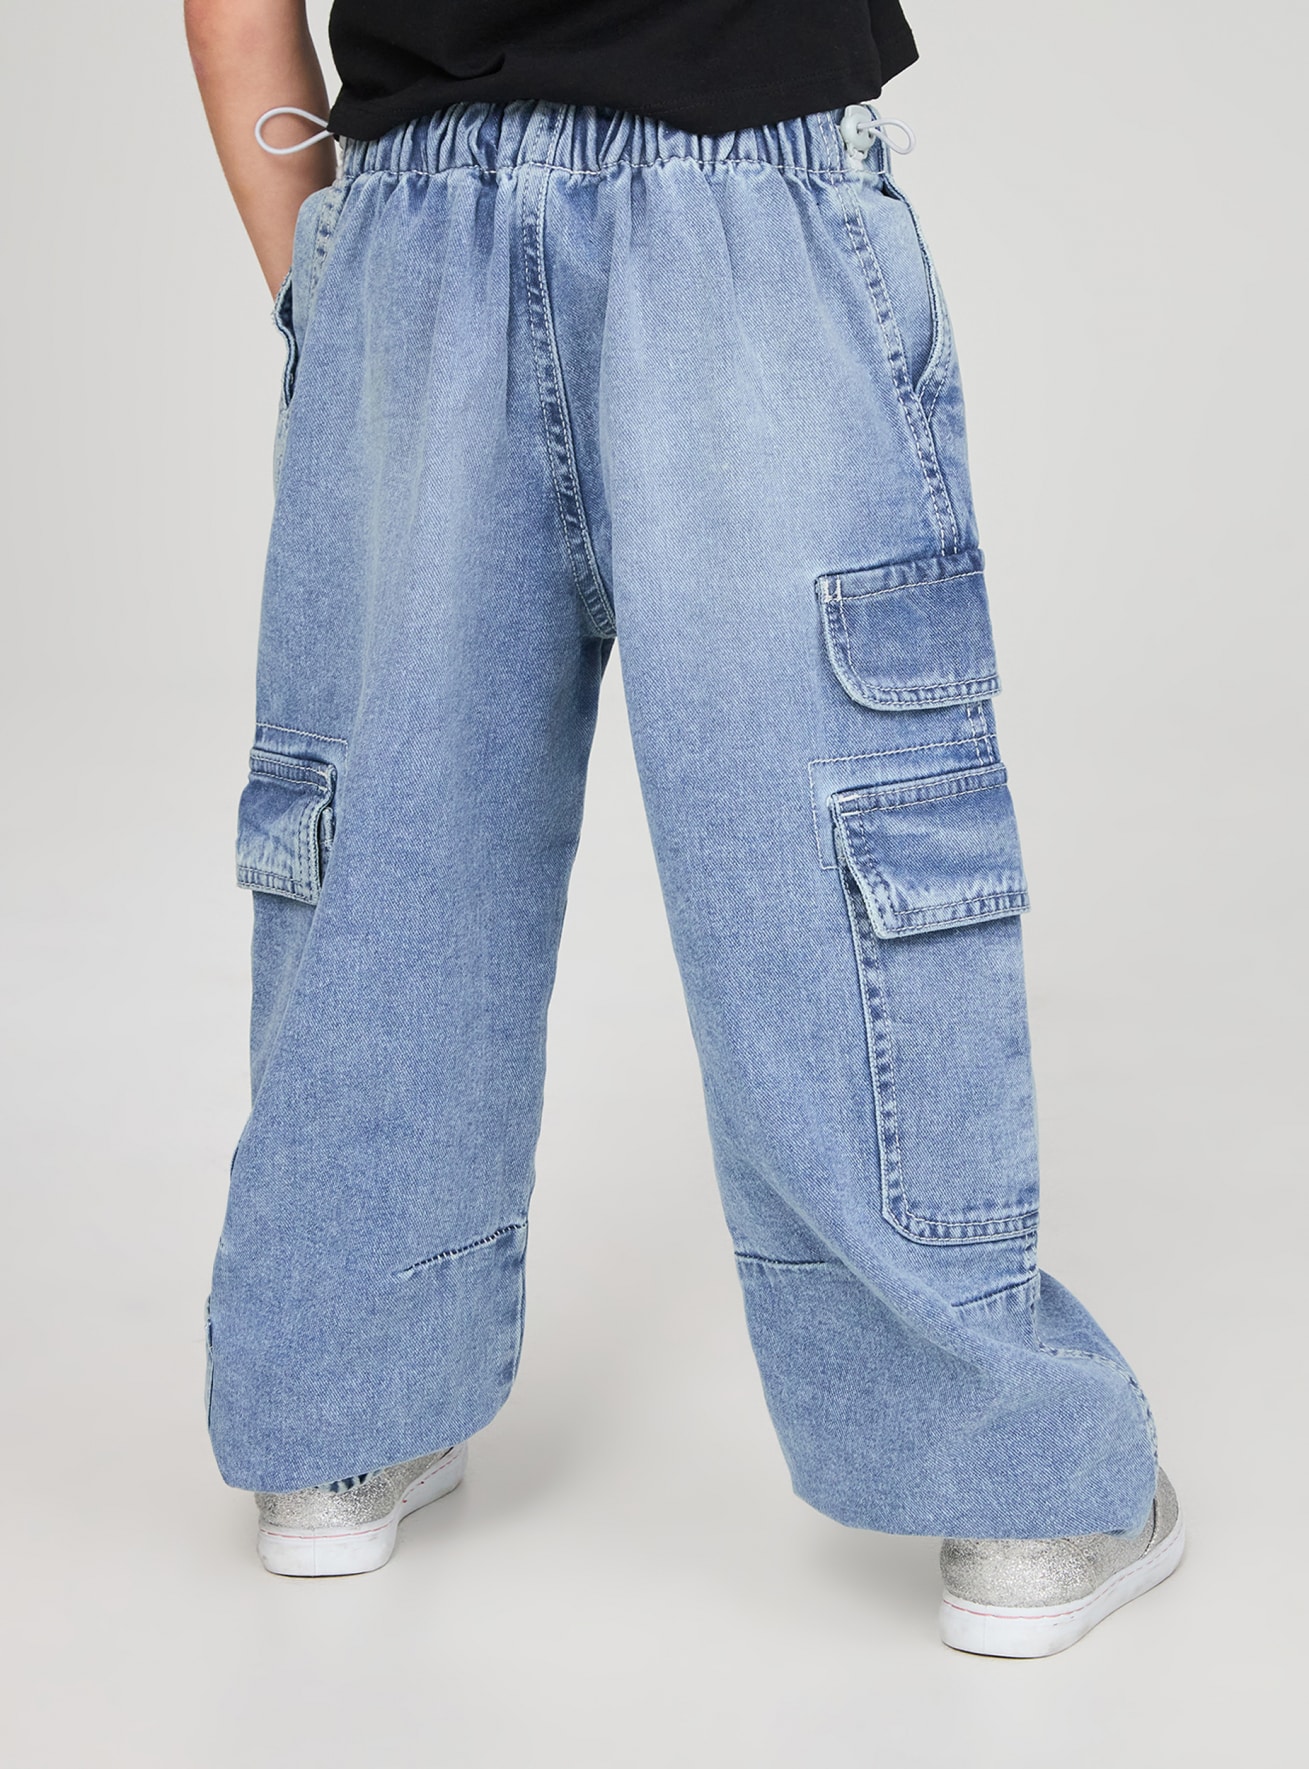 Pantalone Jeans Lungo Bambina Terranova